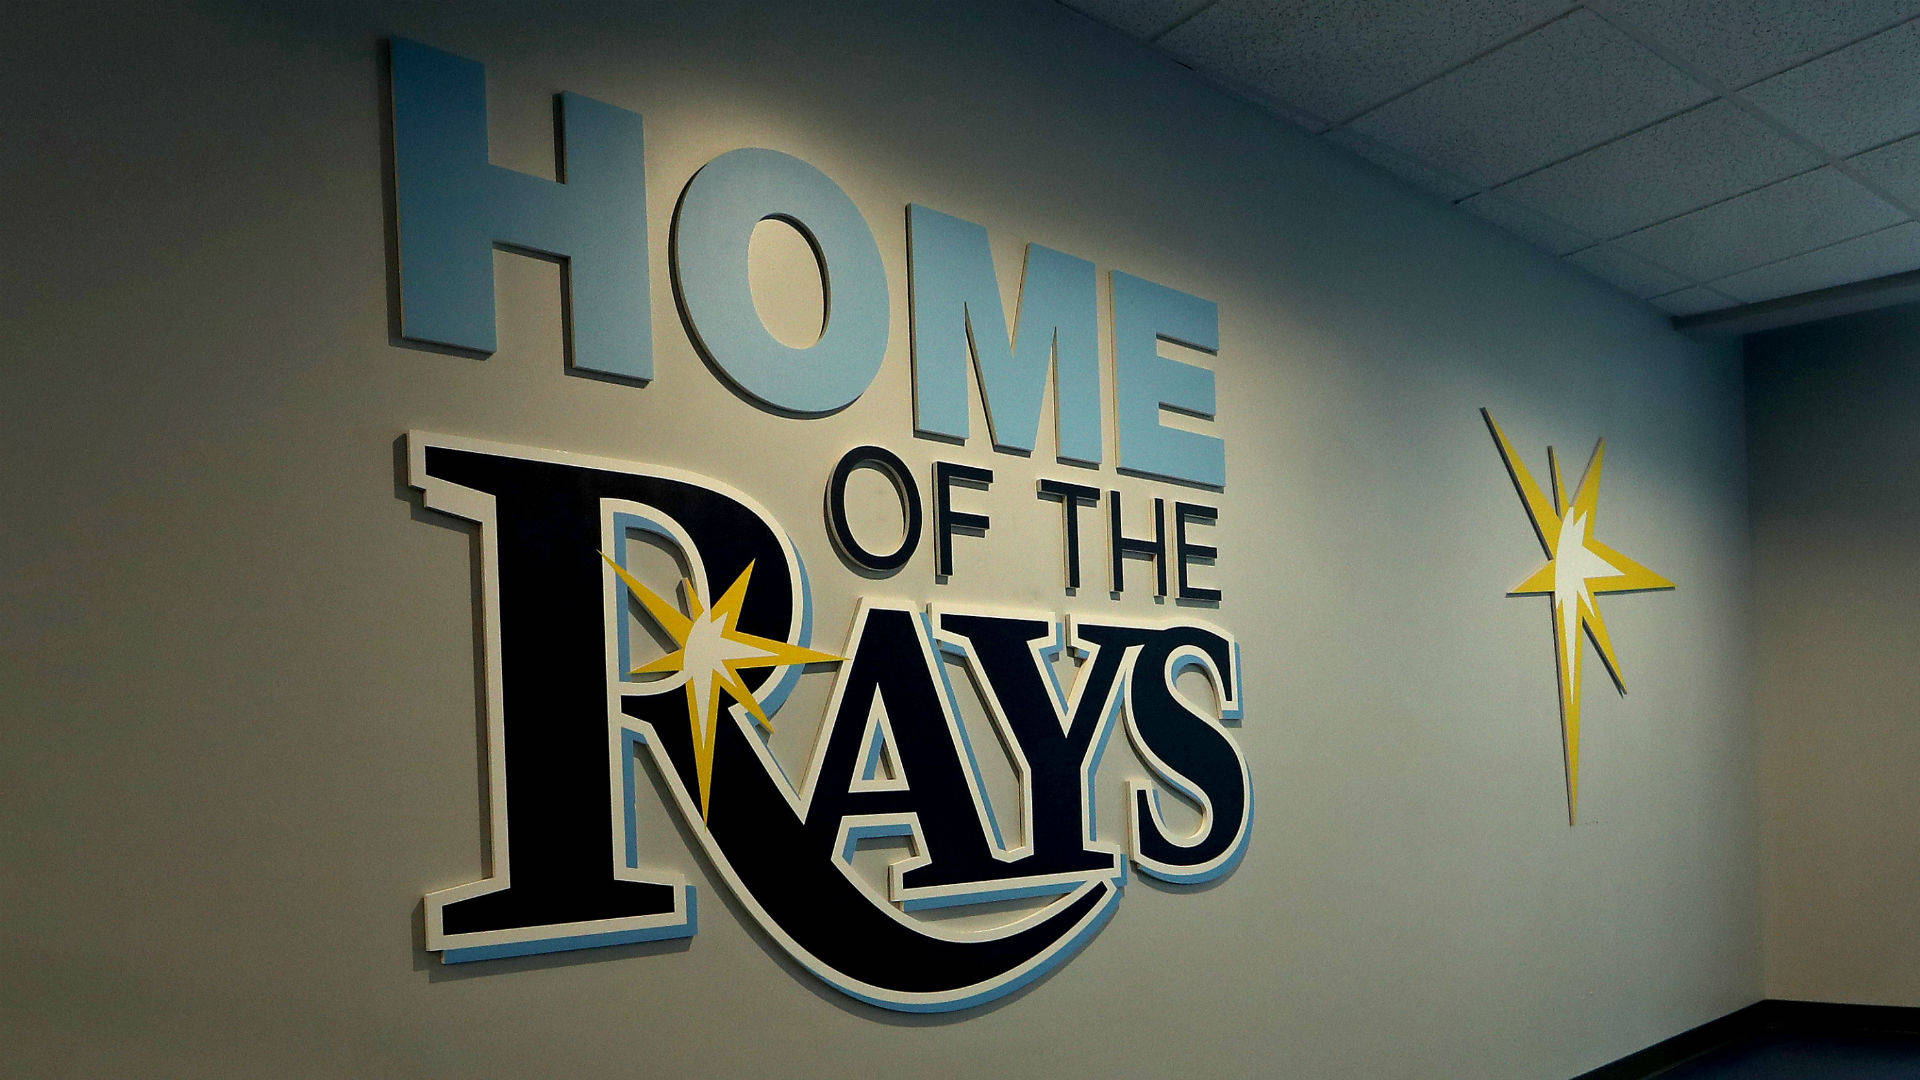 Tampa Bay Rays Baseball Team Wall Wallpaper